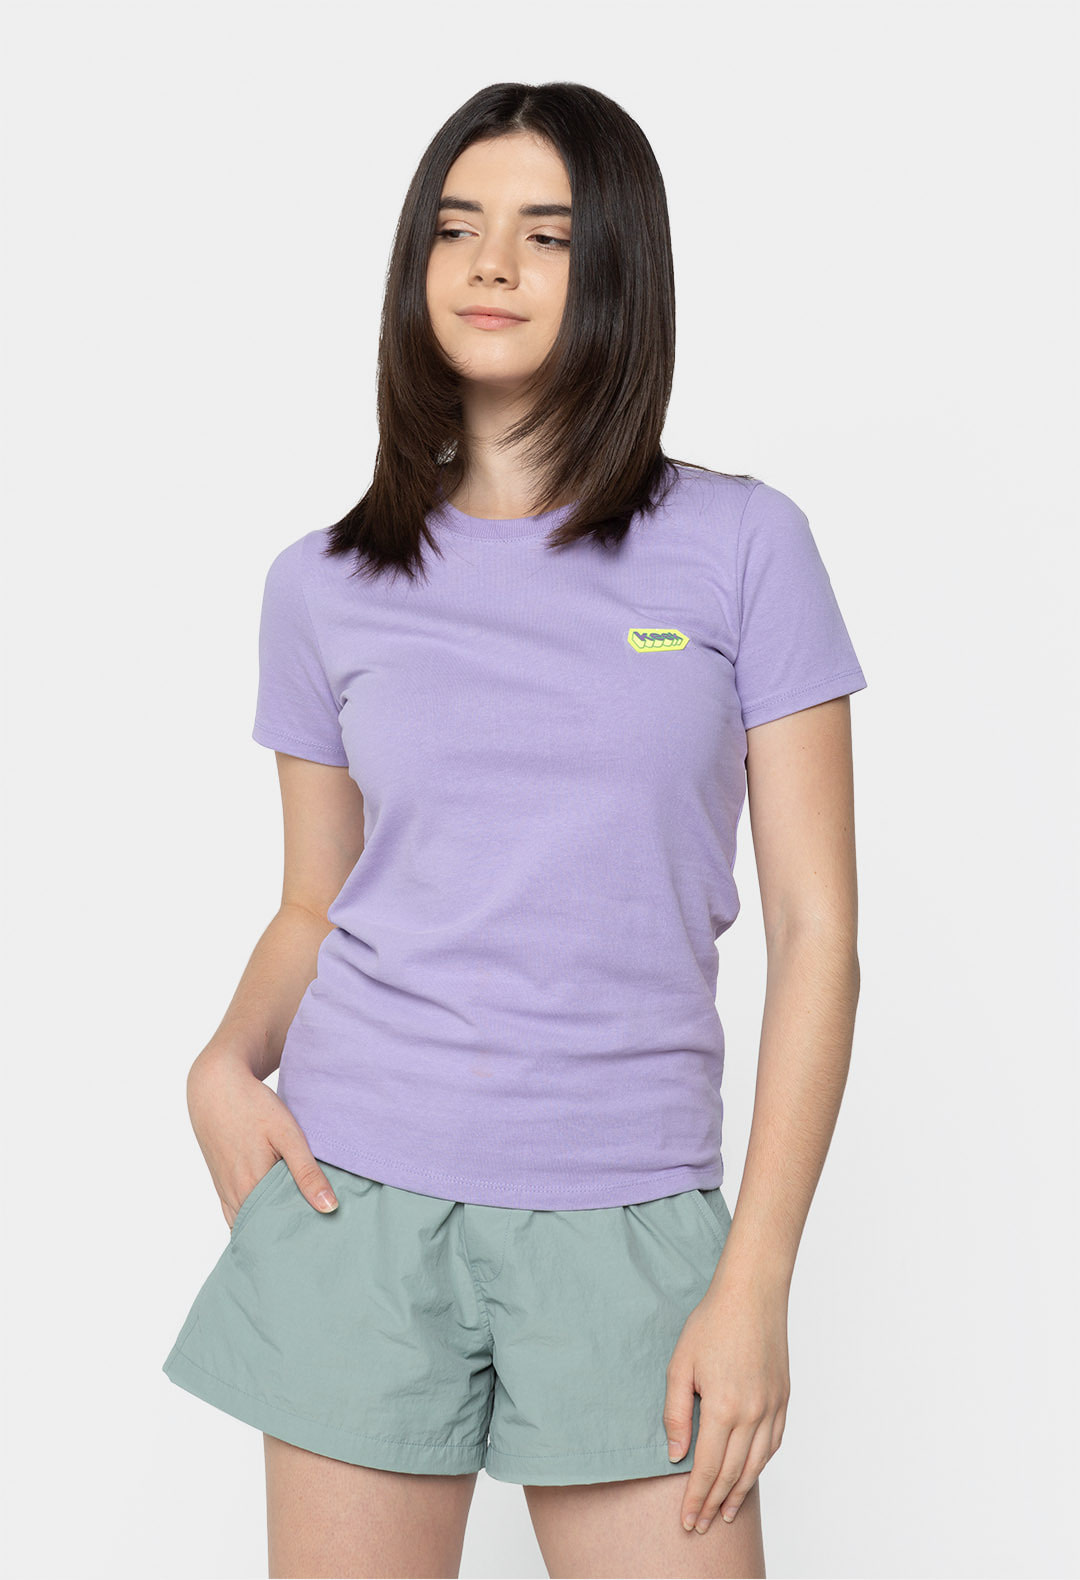 keek Cube Wappen T-shirts - Light Purple 스트릿패션 유니섹스브랜드 커플시밀러룩 남자쇼핑몰 여성의류쇼핑몰 후드티 힙색